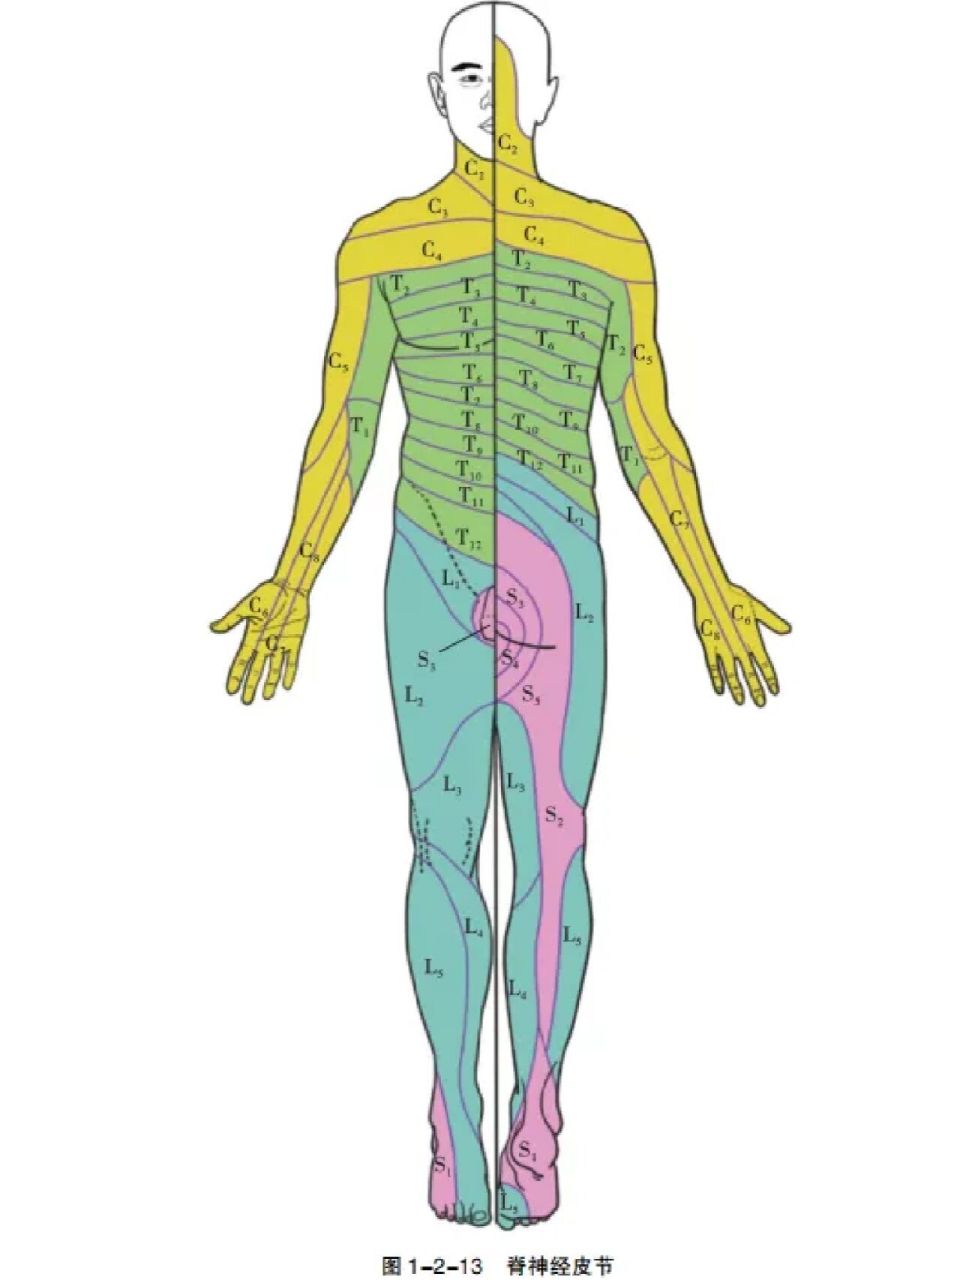 神经支配区 神经根病是指脊神经或其分支轴突传导阻滞而导致的一种